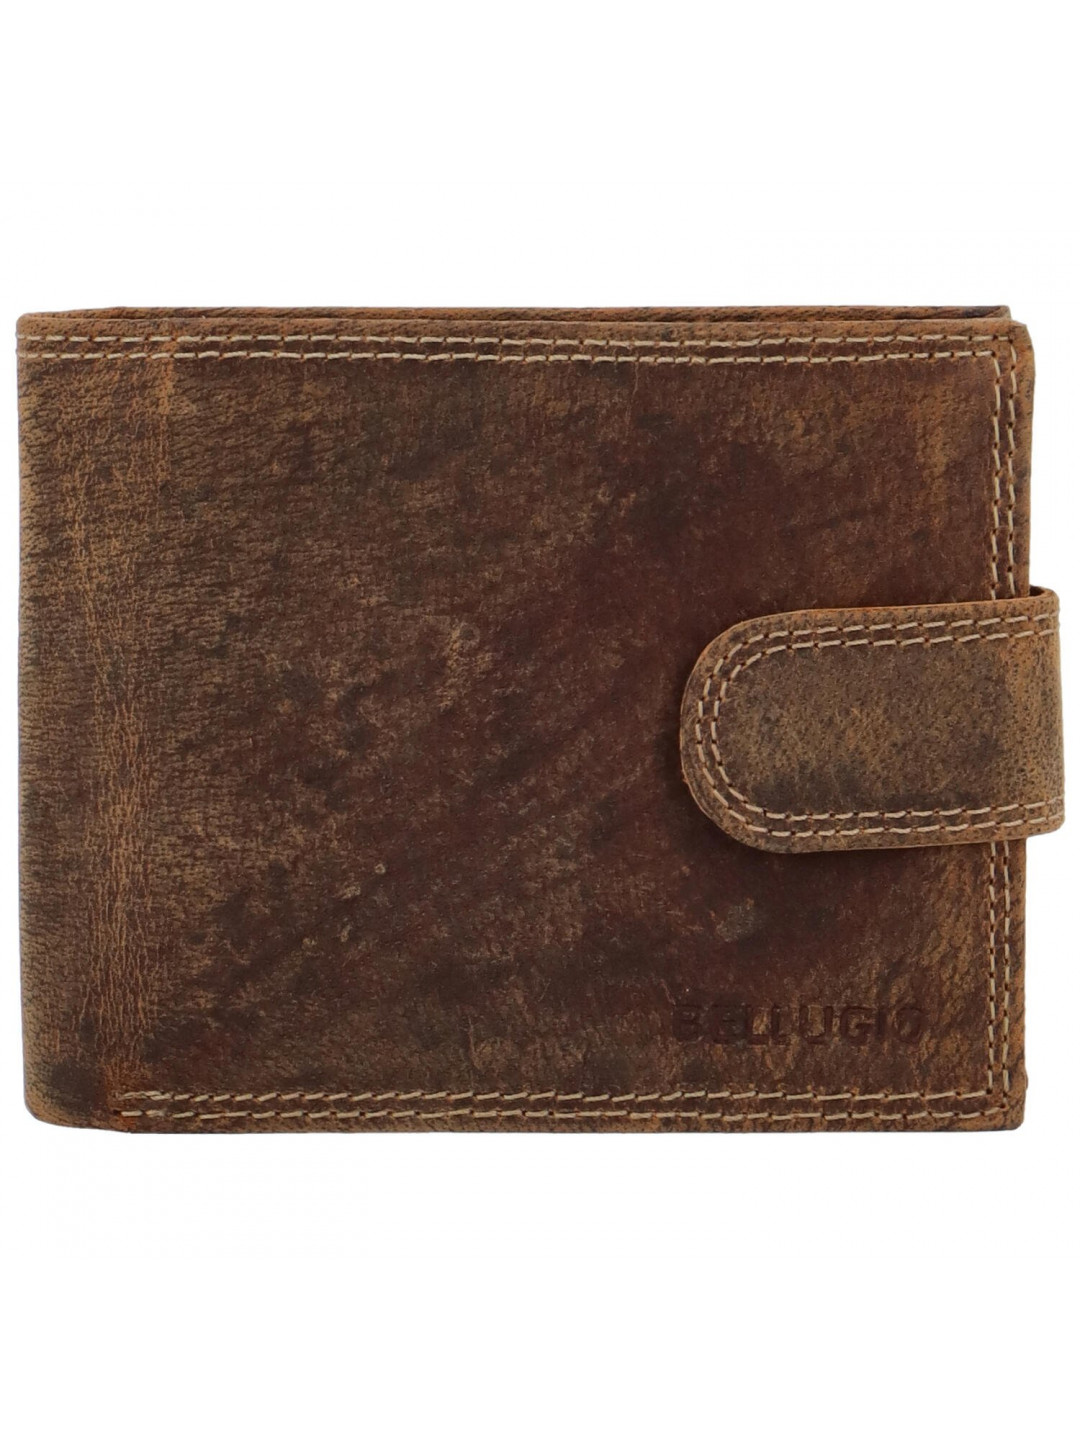 Pánská kožená peněženka tmavě hnědá – Bellugio Santiago